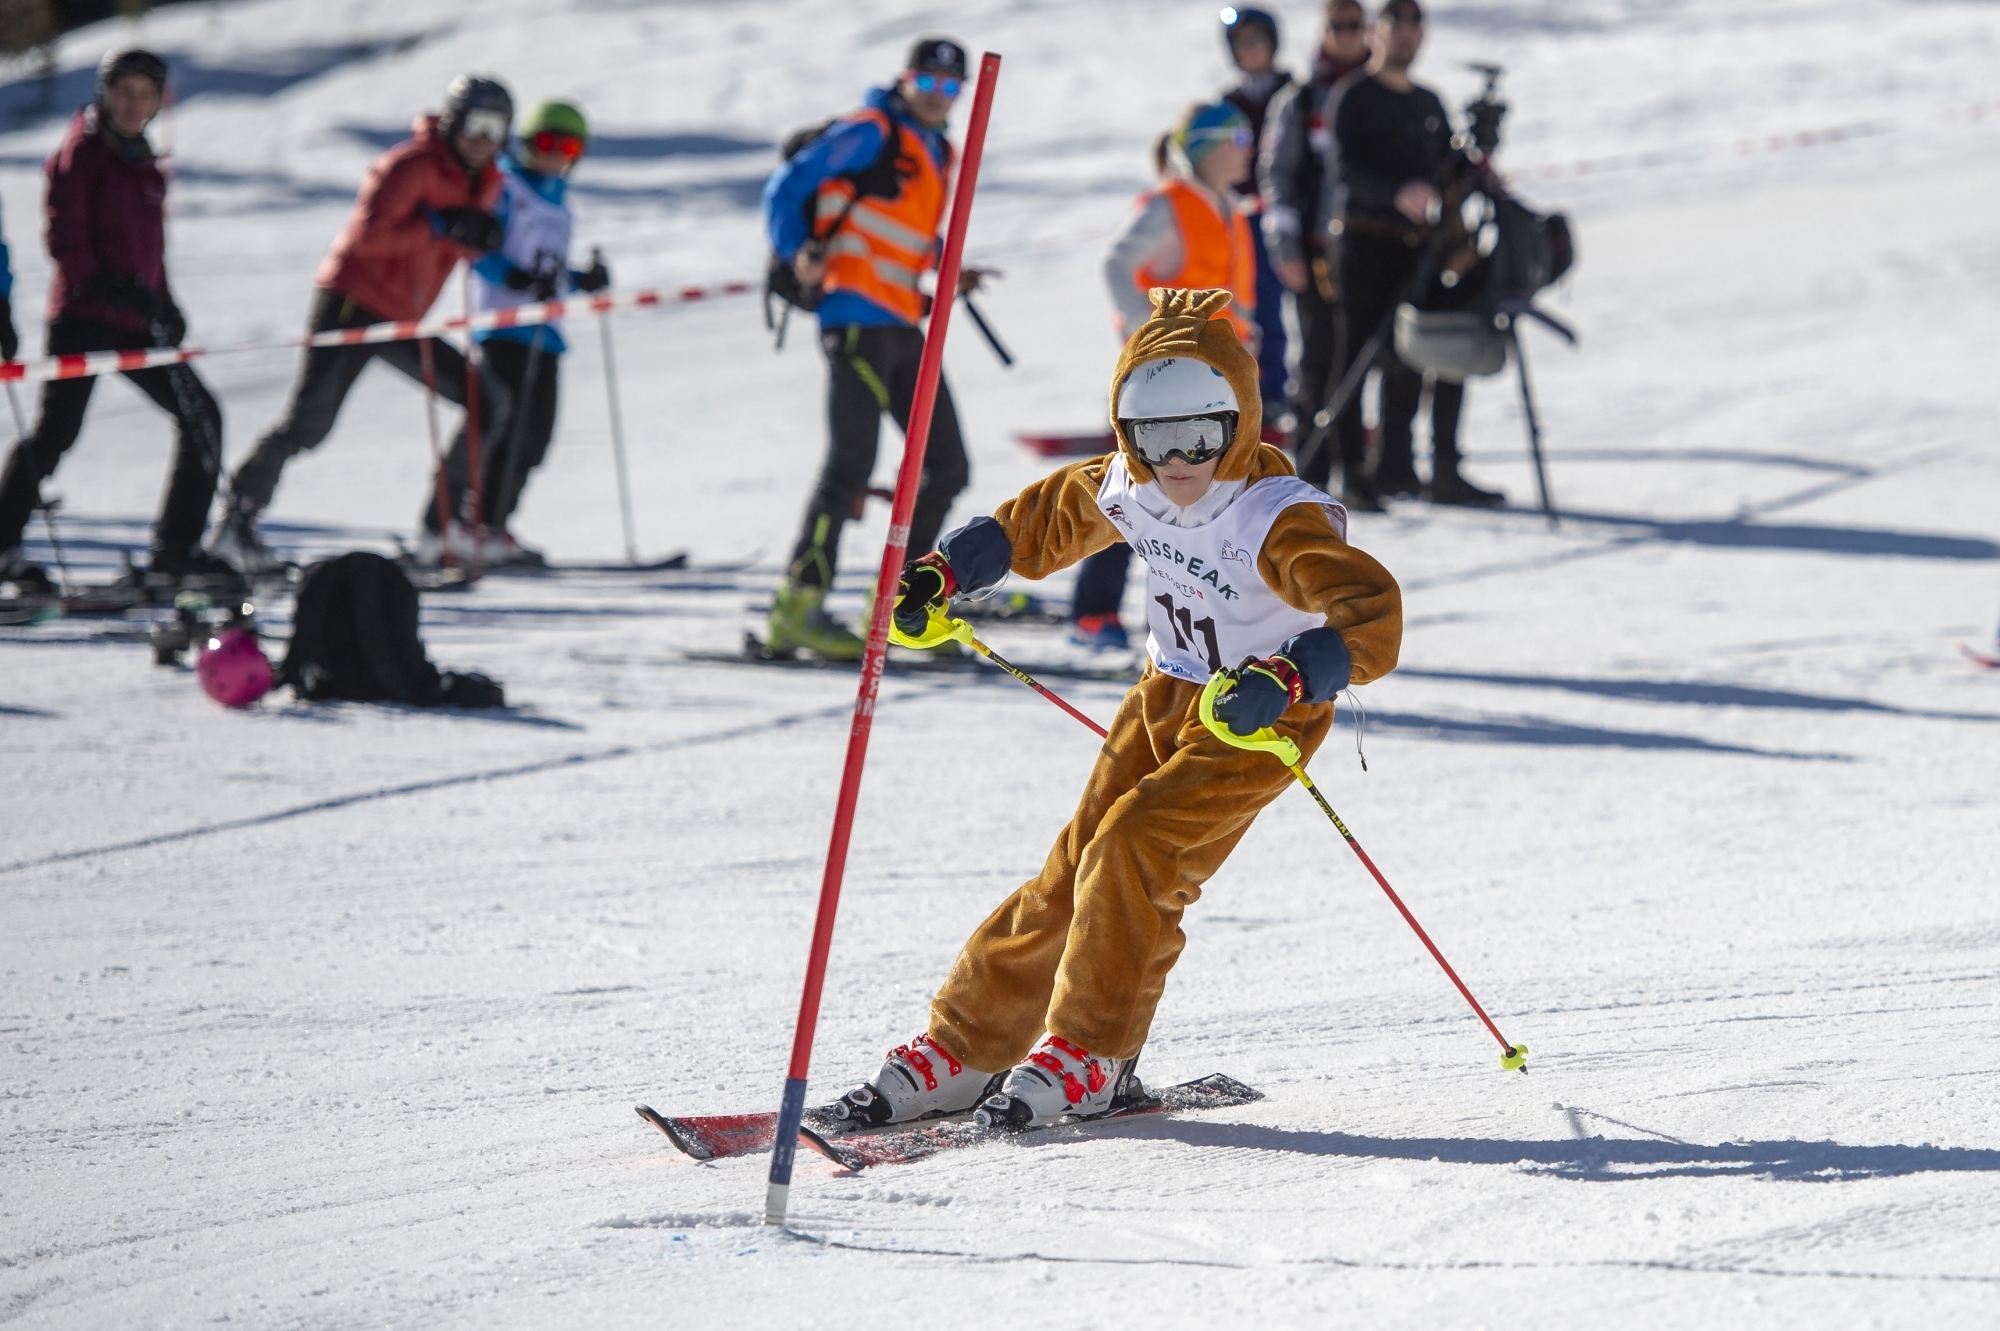 Beaucoup de concurrents du Défi des 300 se lancent sur la piste en étant déguisés. La journée de ski se veut avant tout conviviale et décontractée.